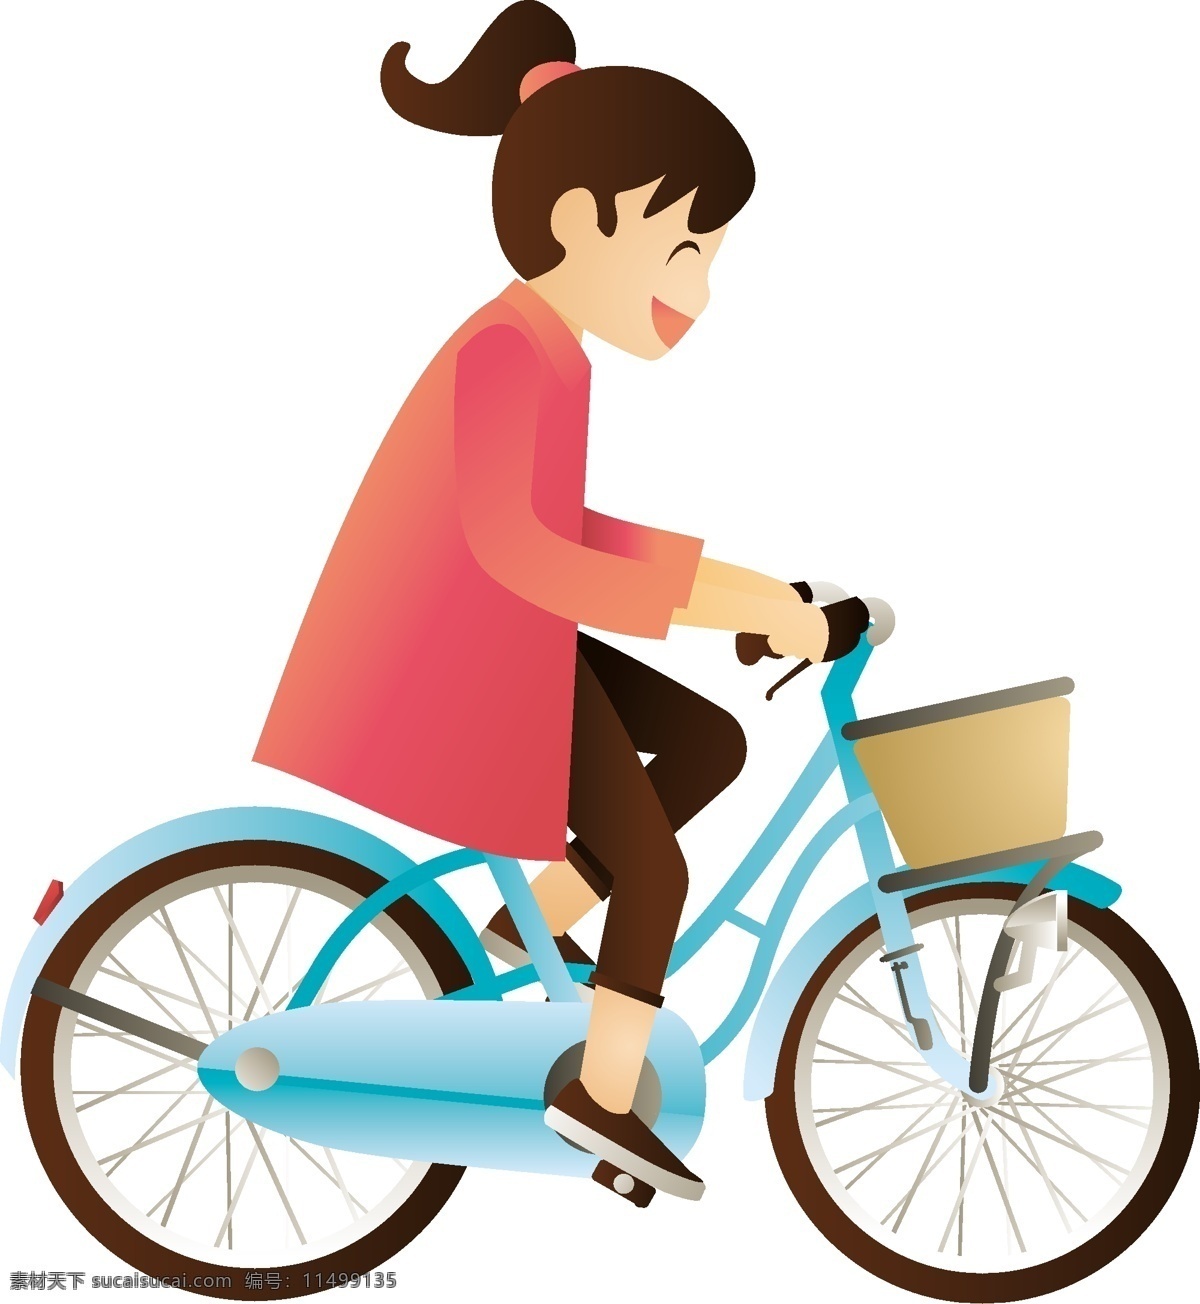 卡通 矢量 手绘 正在 骑 自行车 女孩 卡通矢量 手绘骑自行车 外出 郊游 骑行 踏青 旅游 上学 单车 骑自行车的人